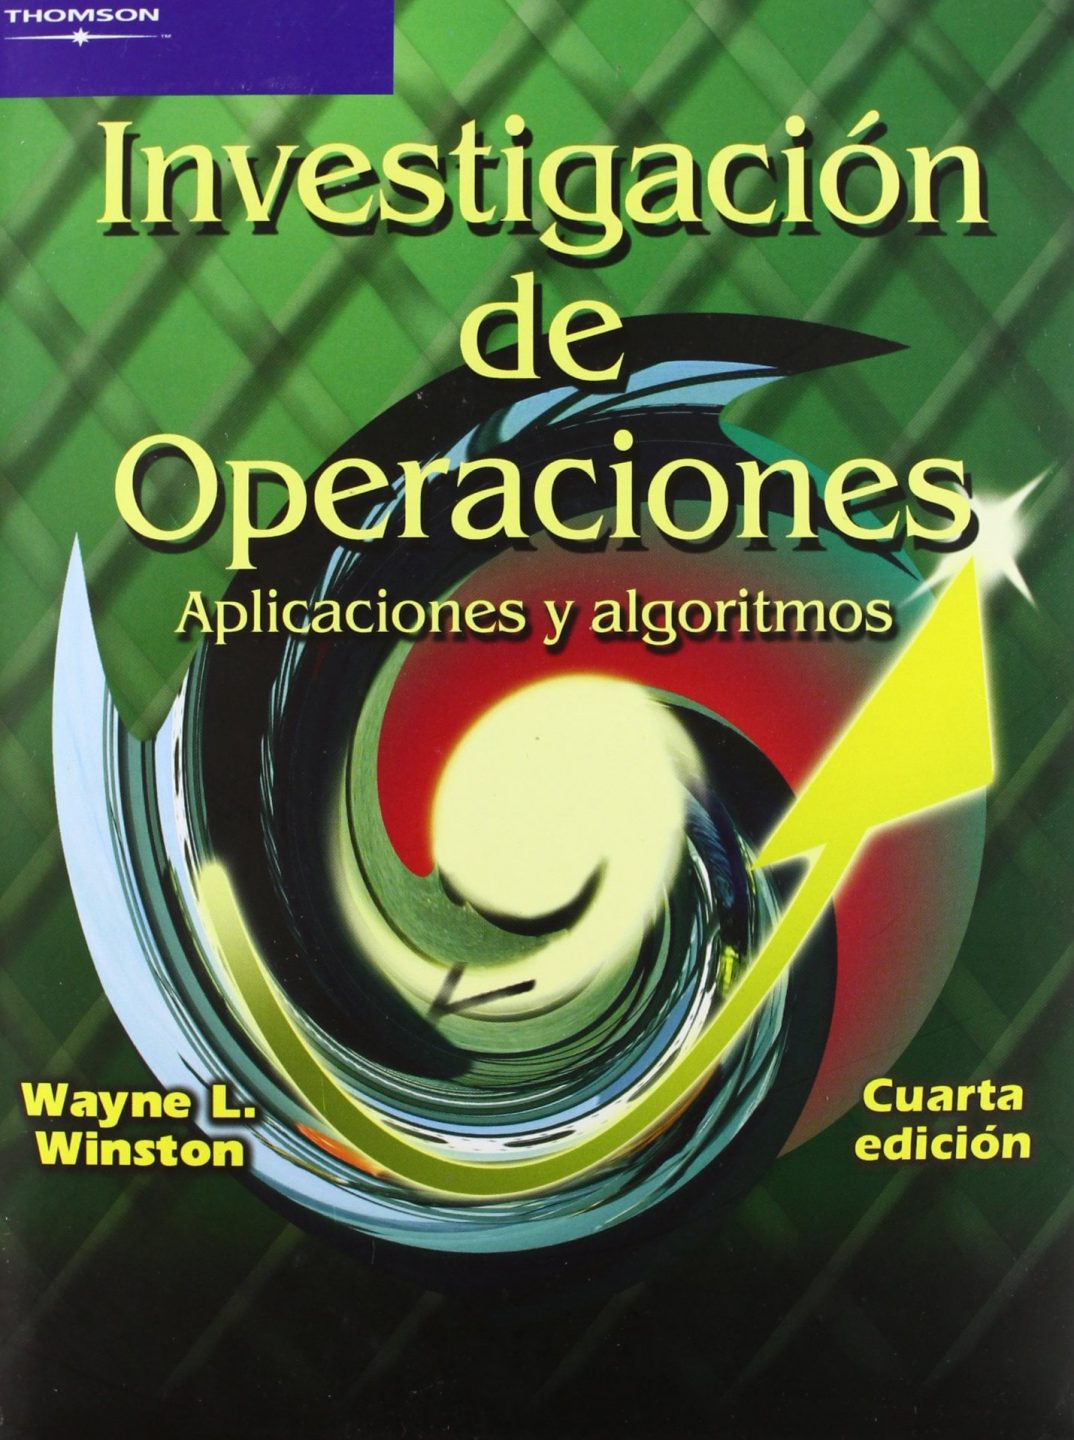 Investigación de Operaciones, Aplicaciones y Algoritmos 4 Edición Wayne Winston PDF